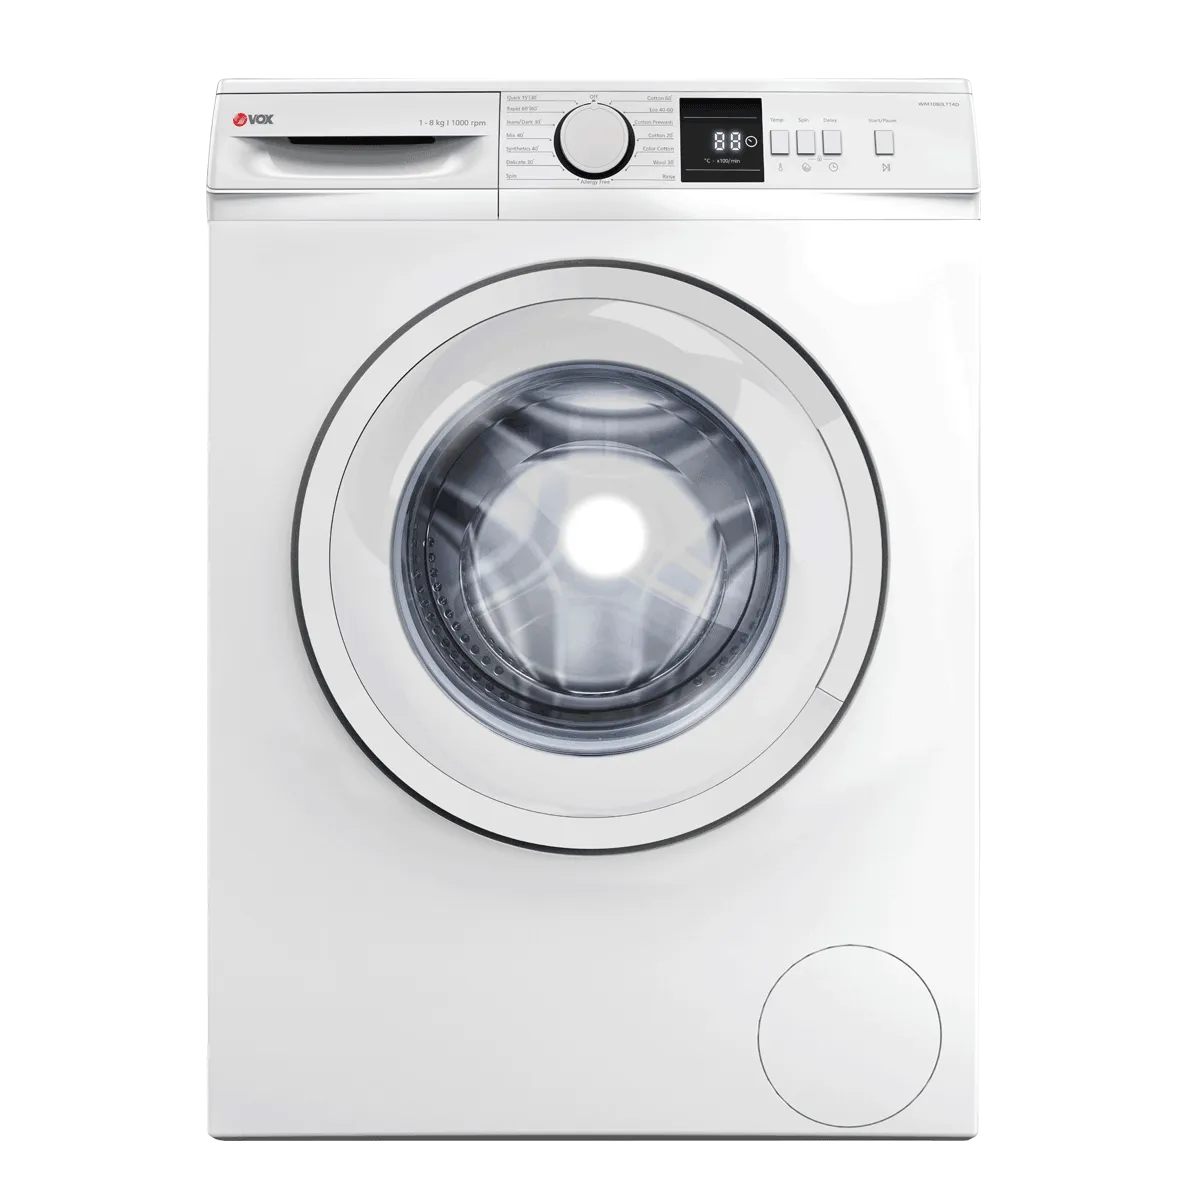 Washing machine WM1080-LT14D 